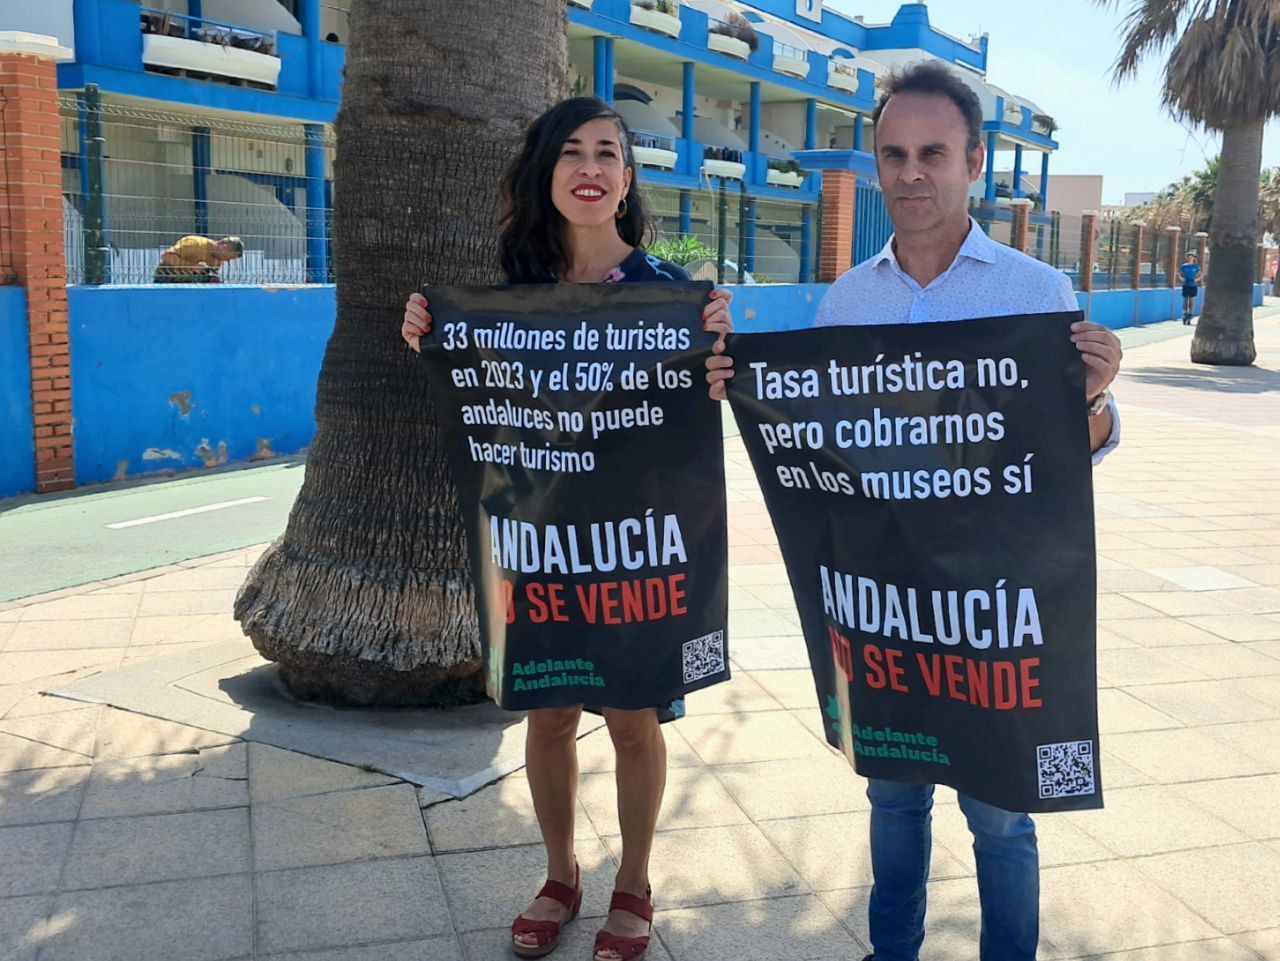 Adelante Andalucía denuncia un "turismo depredador" en Tarifa